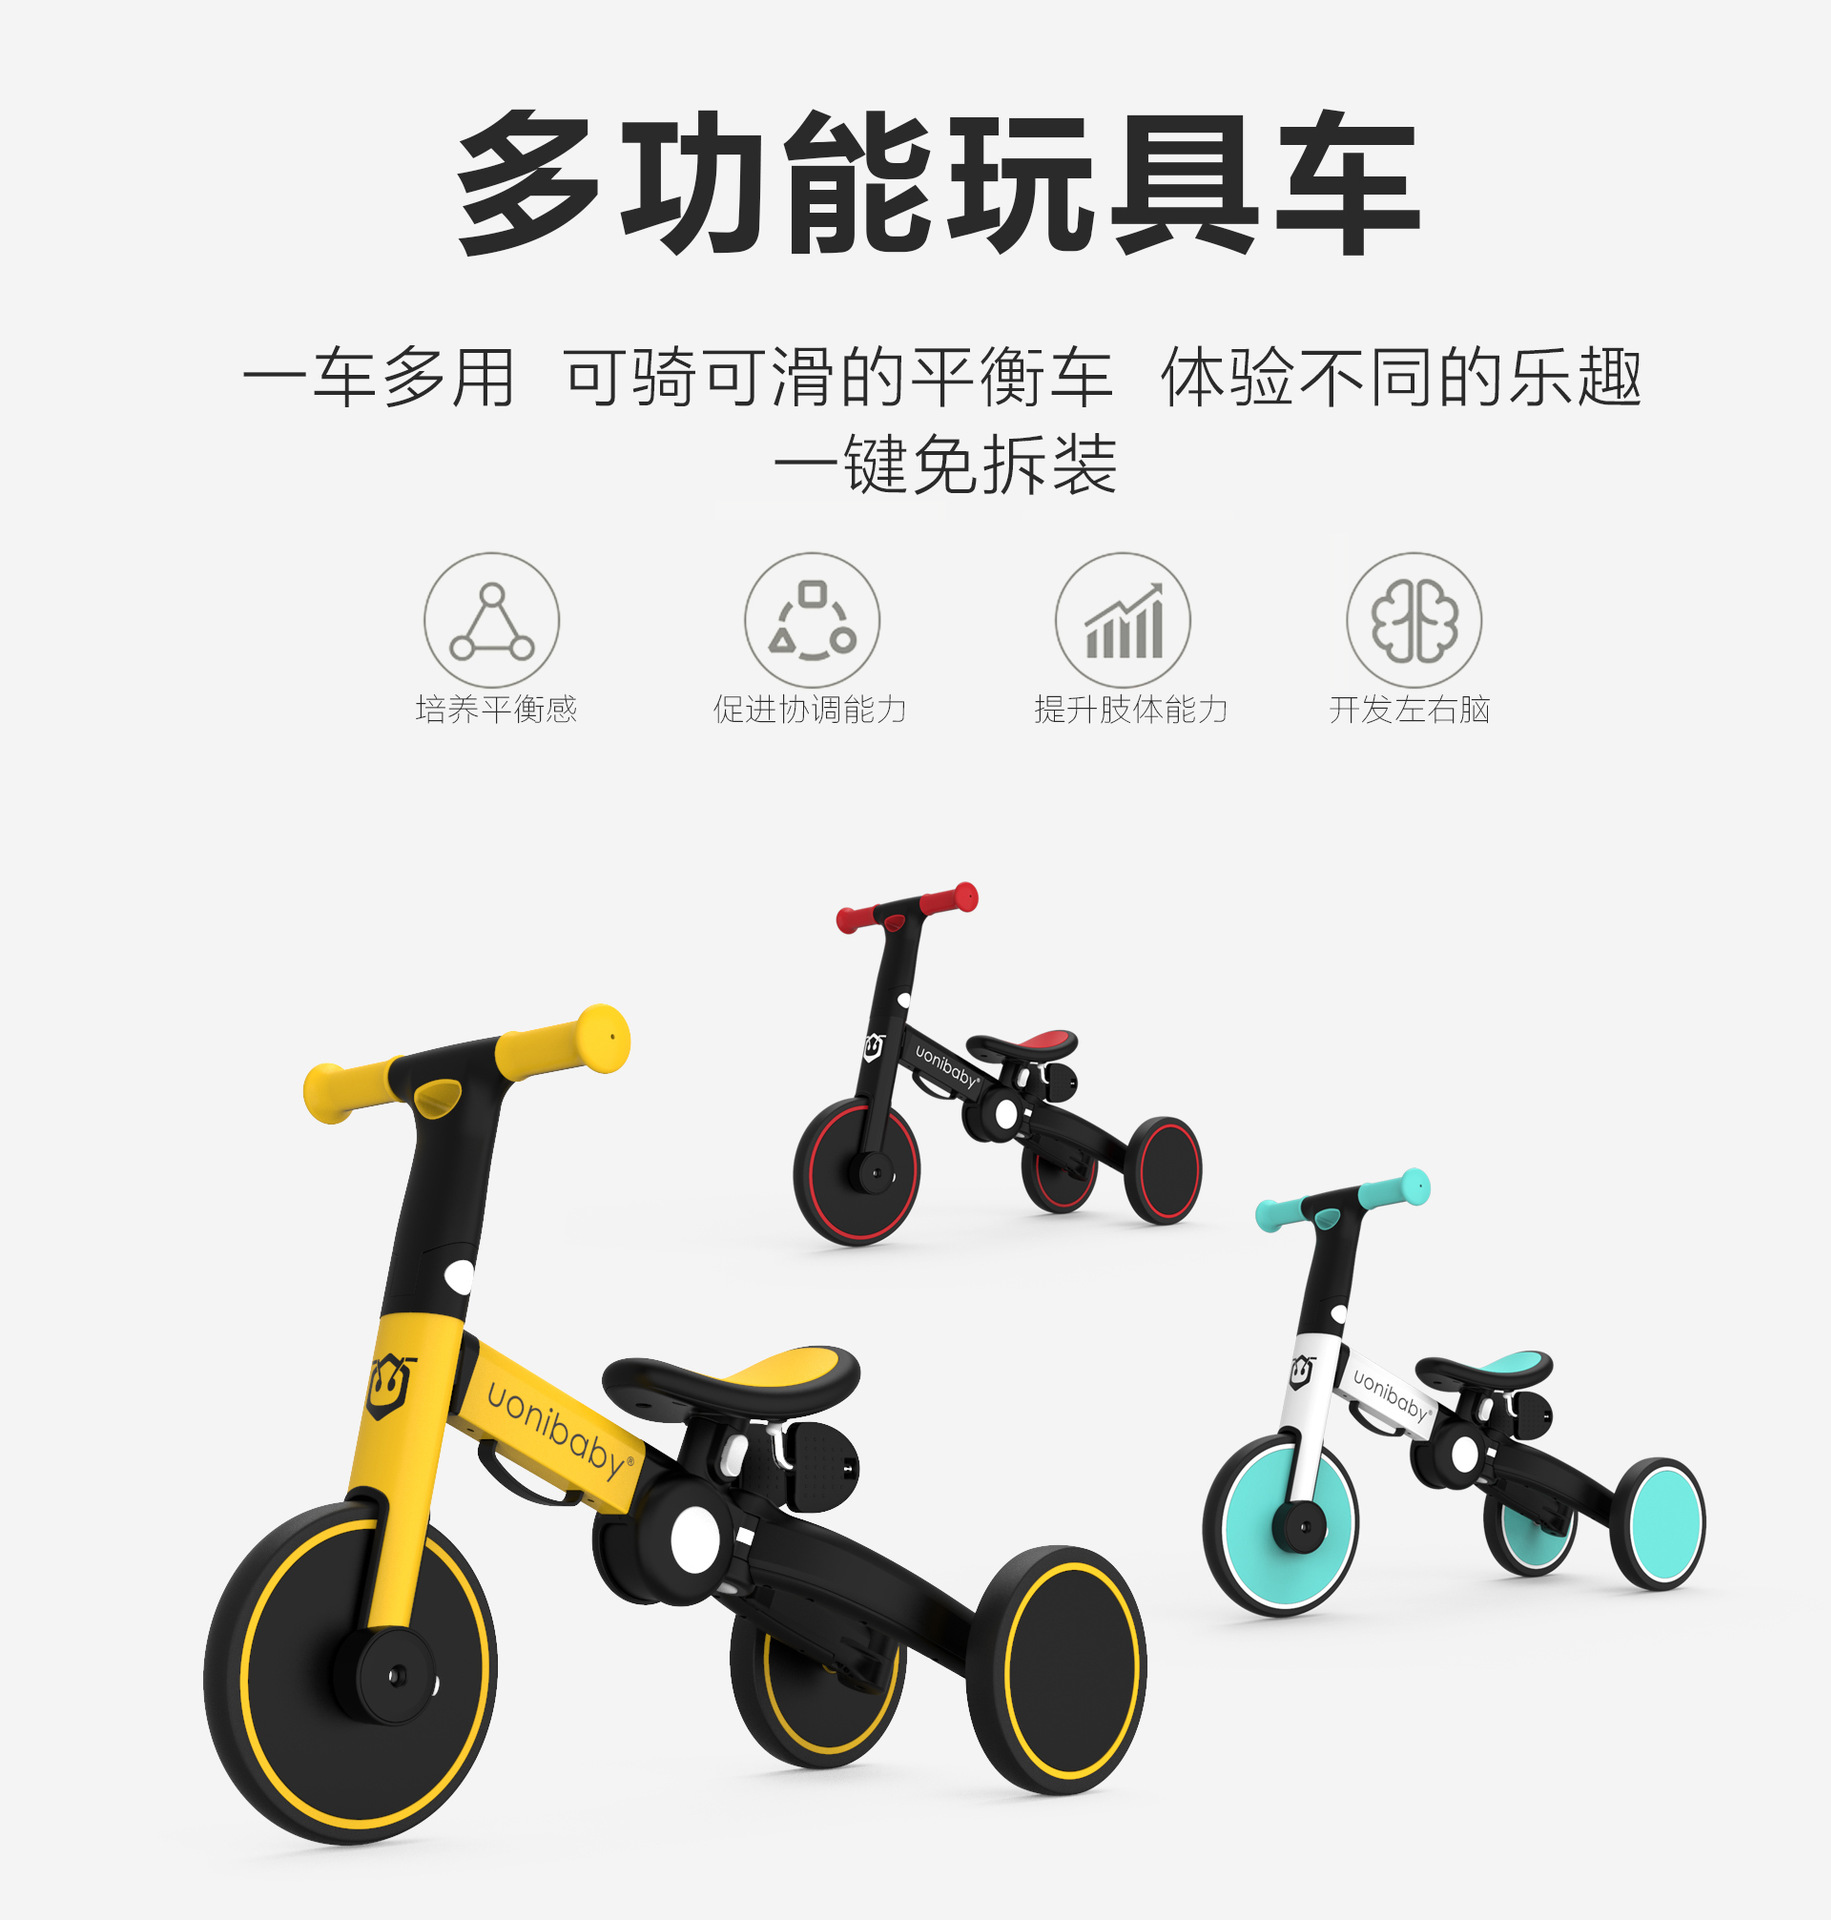 【新品直营】平衡自行车儿童 二合一车无脚踏滑行宝宝滑步两用溜溜1一